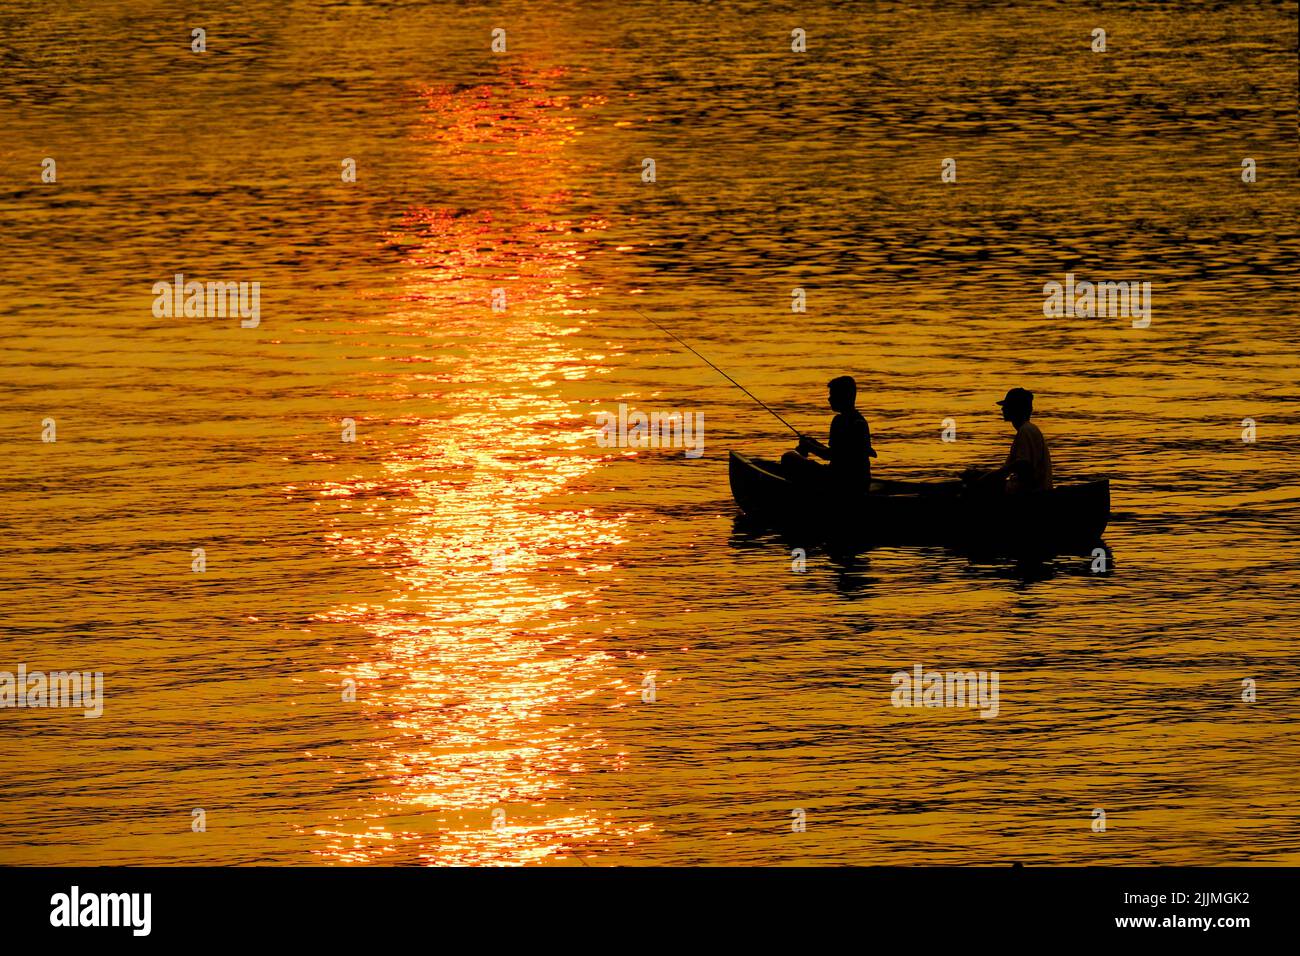 Dos 2 personas en canoa pescando en el lago o el río al atardecer recreando el amanecer Foto de stock